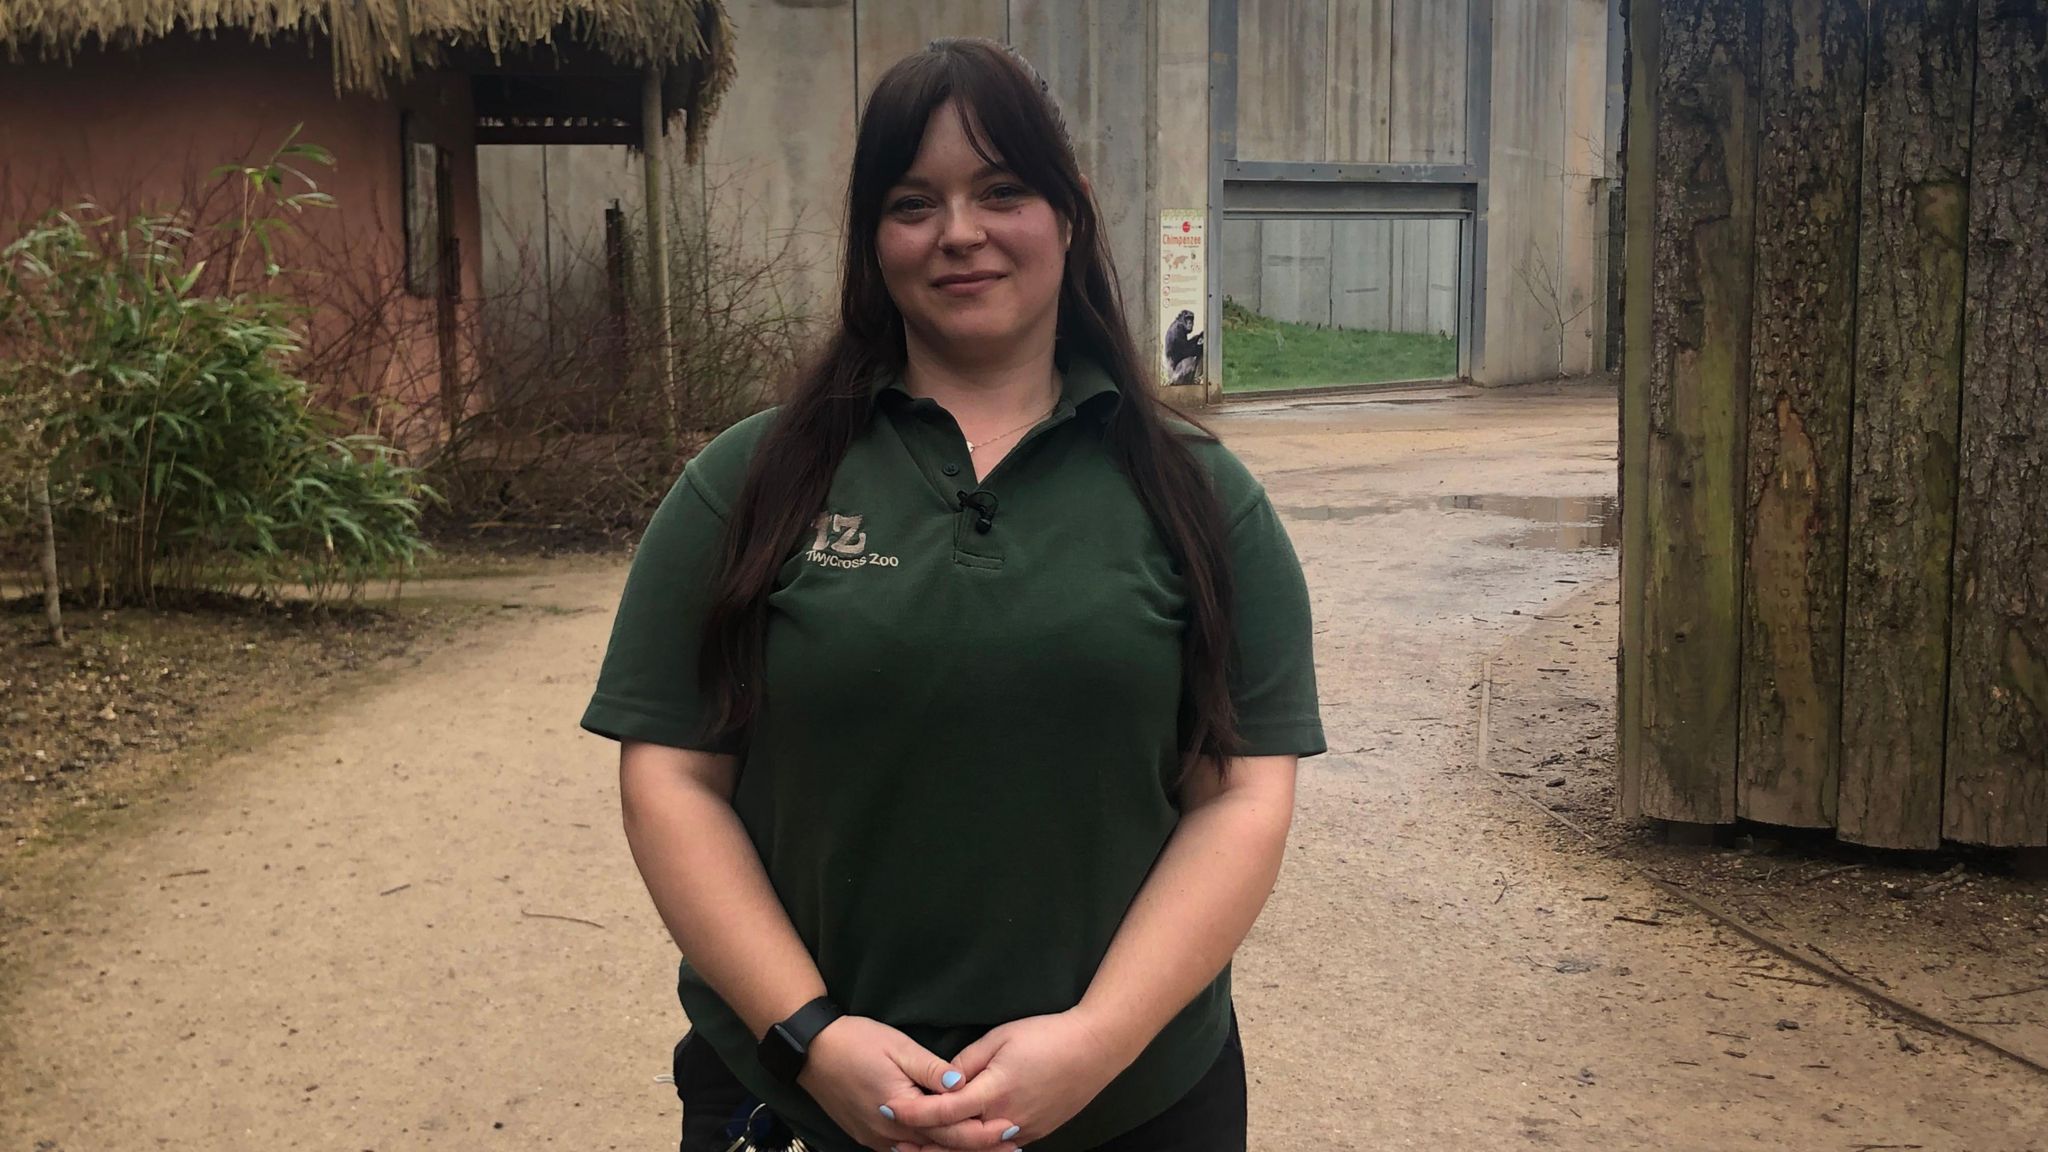 Jen Bridges of Twycross Zoo